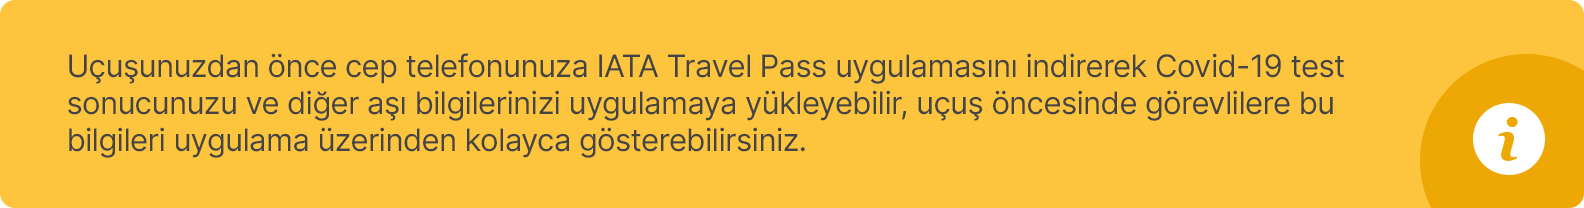 iata travel pass uygulaması hakkında